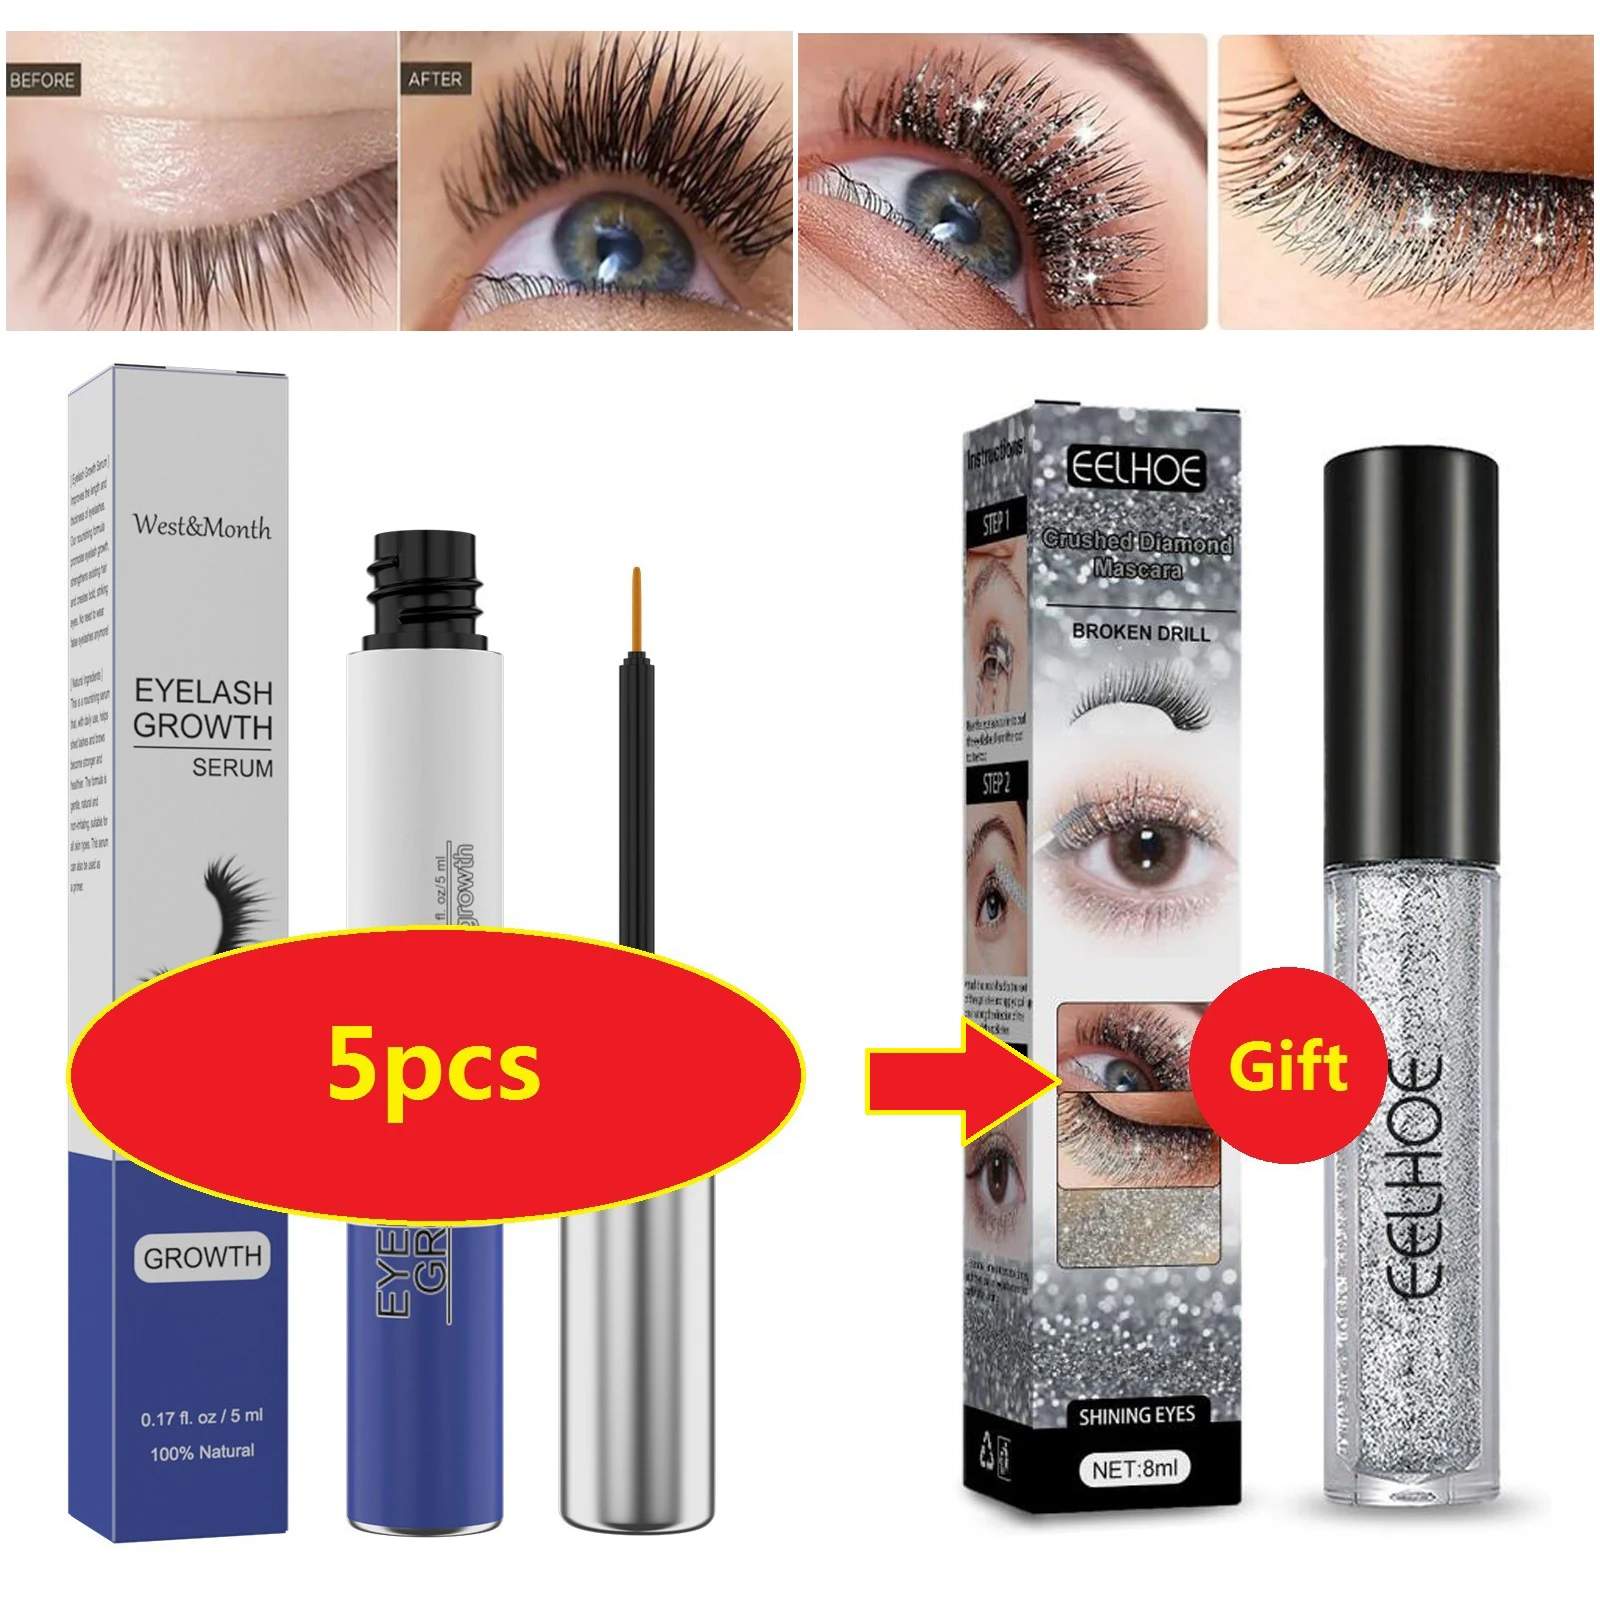 

5Pcs Eyelash Growth Serum Fast 7 Day Eyelash Eyebrow Enhancer Promotes Eyelashes Growth Longer Darker Thicker Eye Care Product